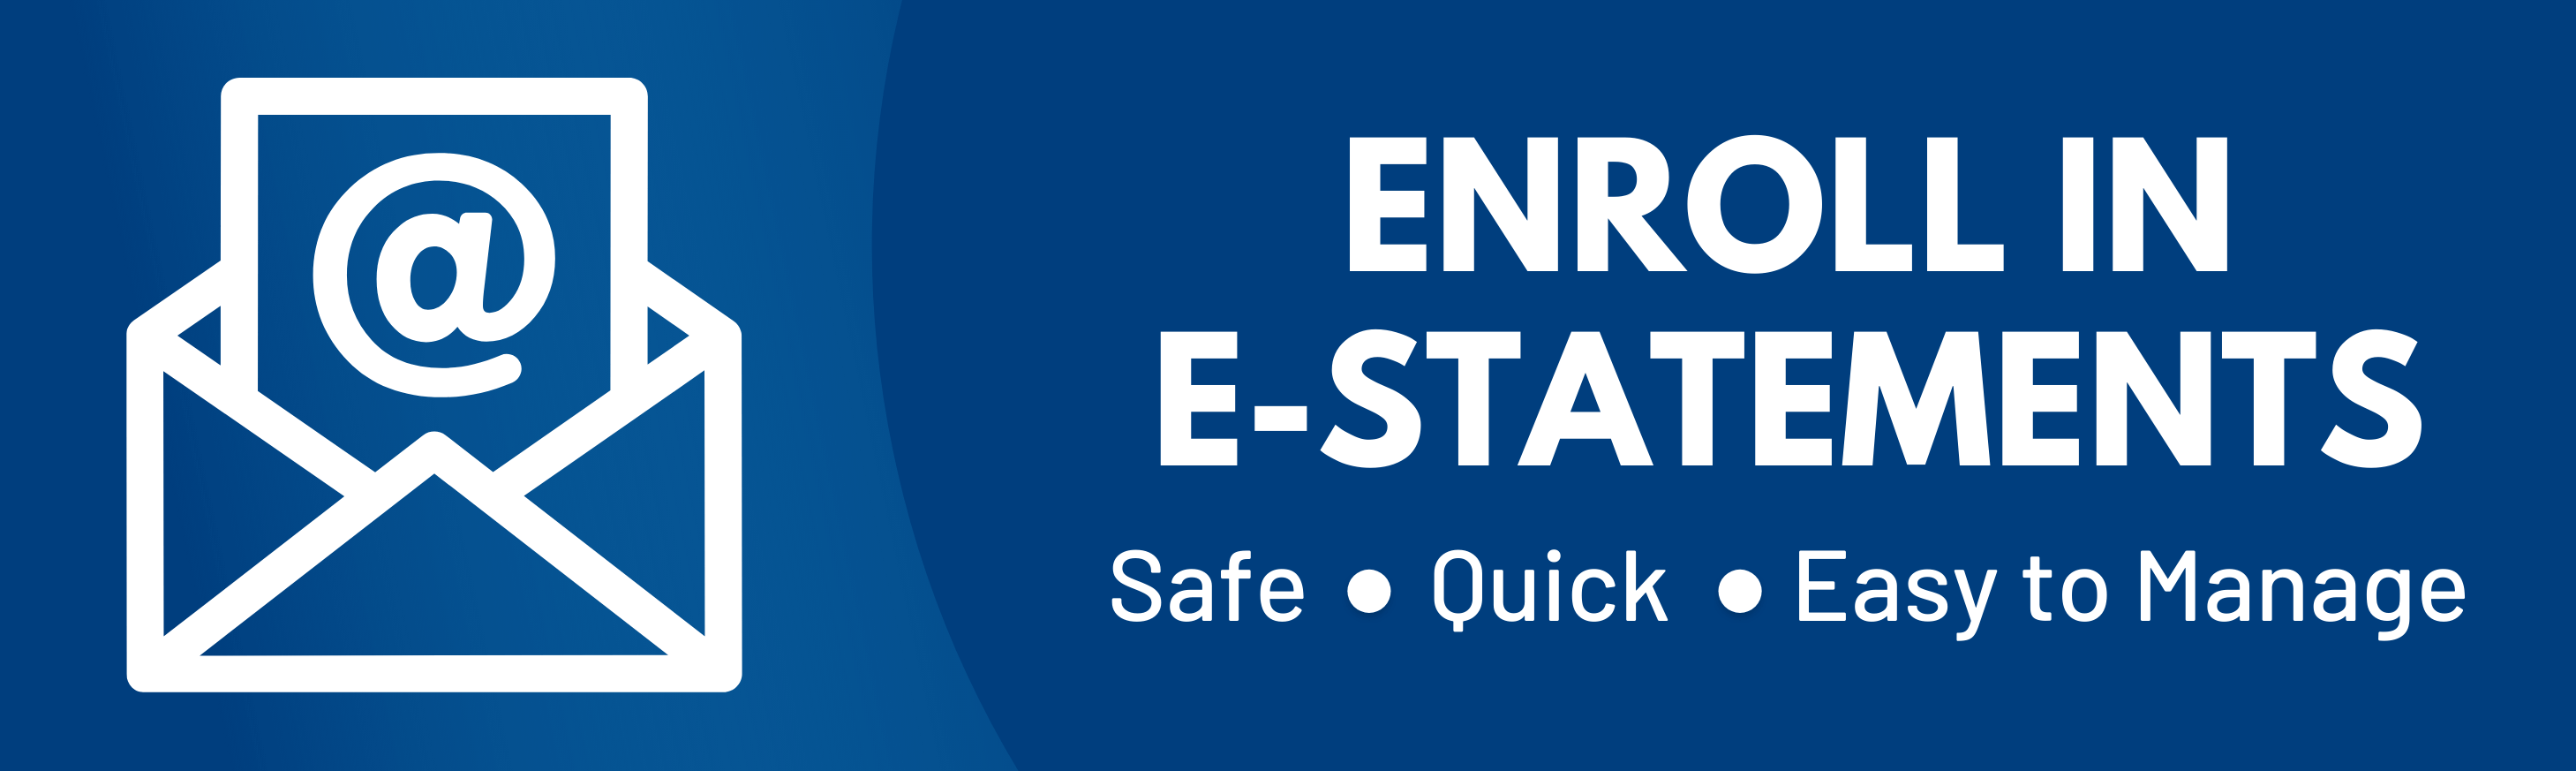 Enroll in eStatements